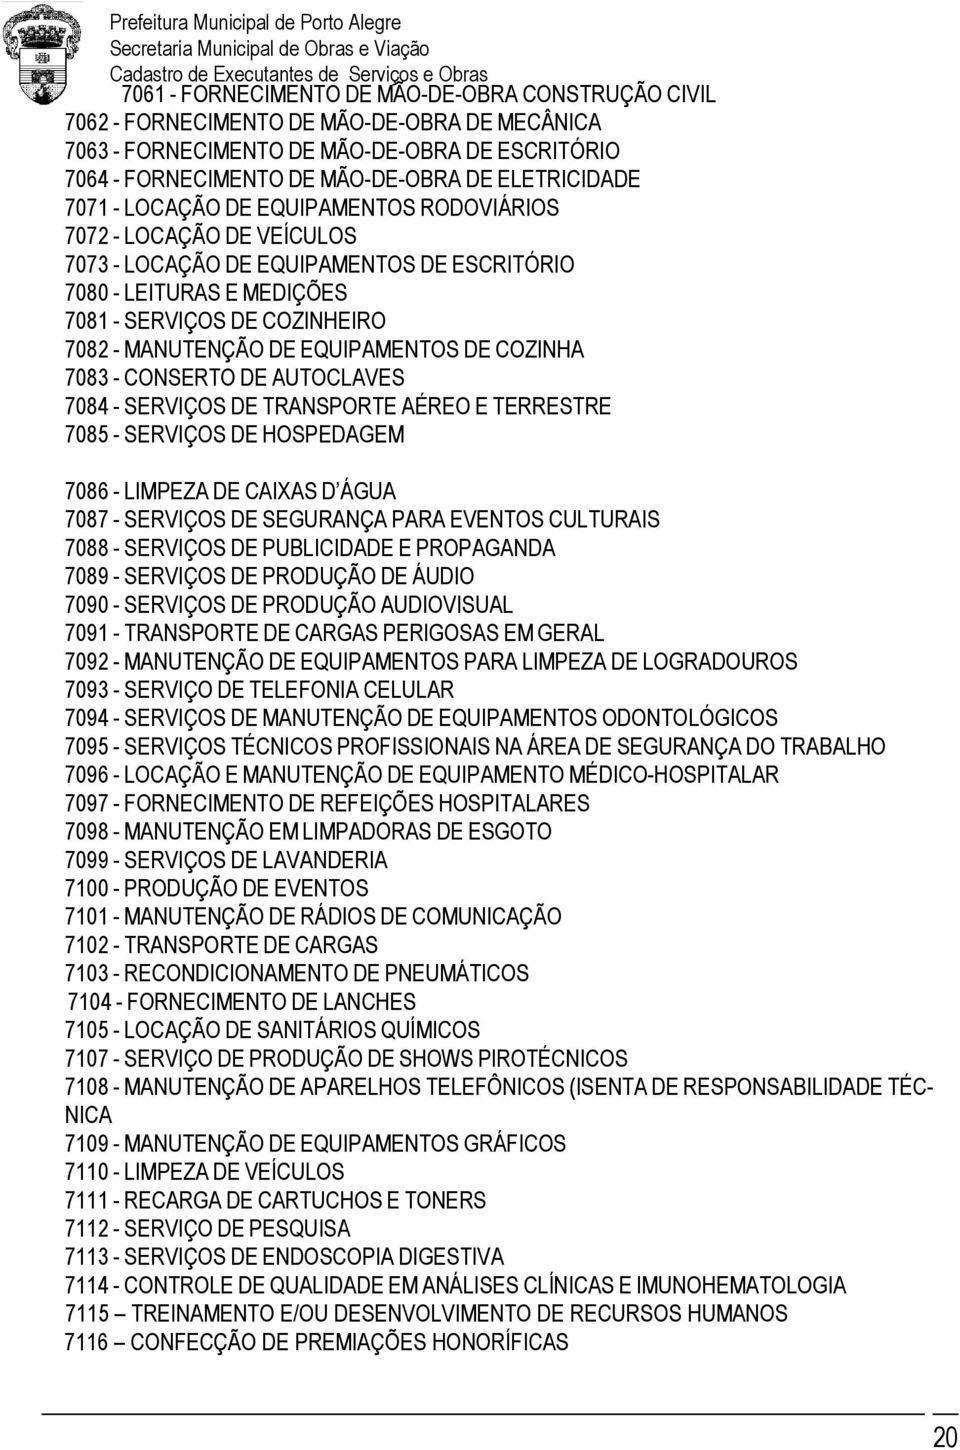 EQUIPAMENTOS DE COZINHA 7083 - CONSERTO DE AUTOCLAVES 7084 - SERVIÇOS DE TRANSPORTE AÉREO E TERRESTRE 7085 - SERVIÇOS DE HOSPEDAGEM 7086 - LIMPEZA DE CAIXAS D ÁGUA 7087 - SERVIÇOS DE SEGURANÇA PARA